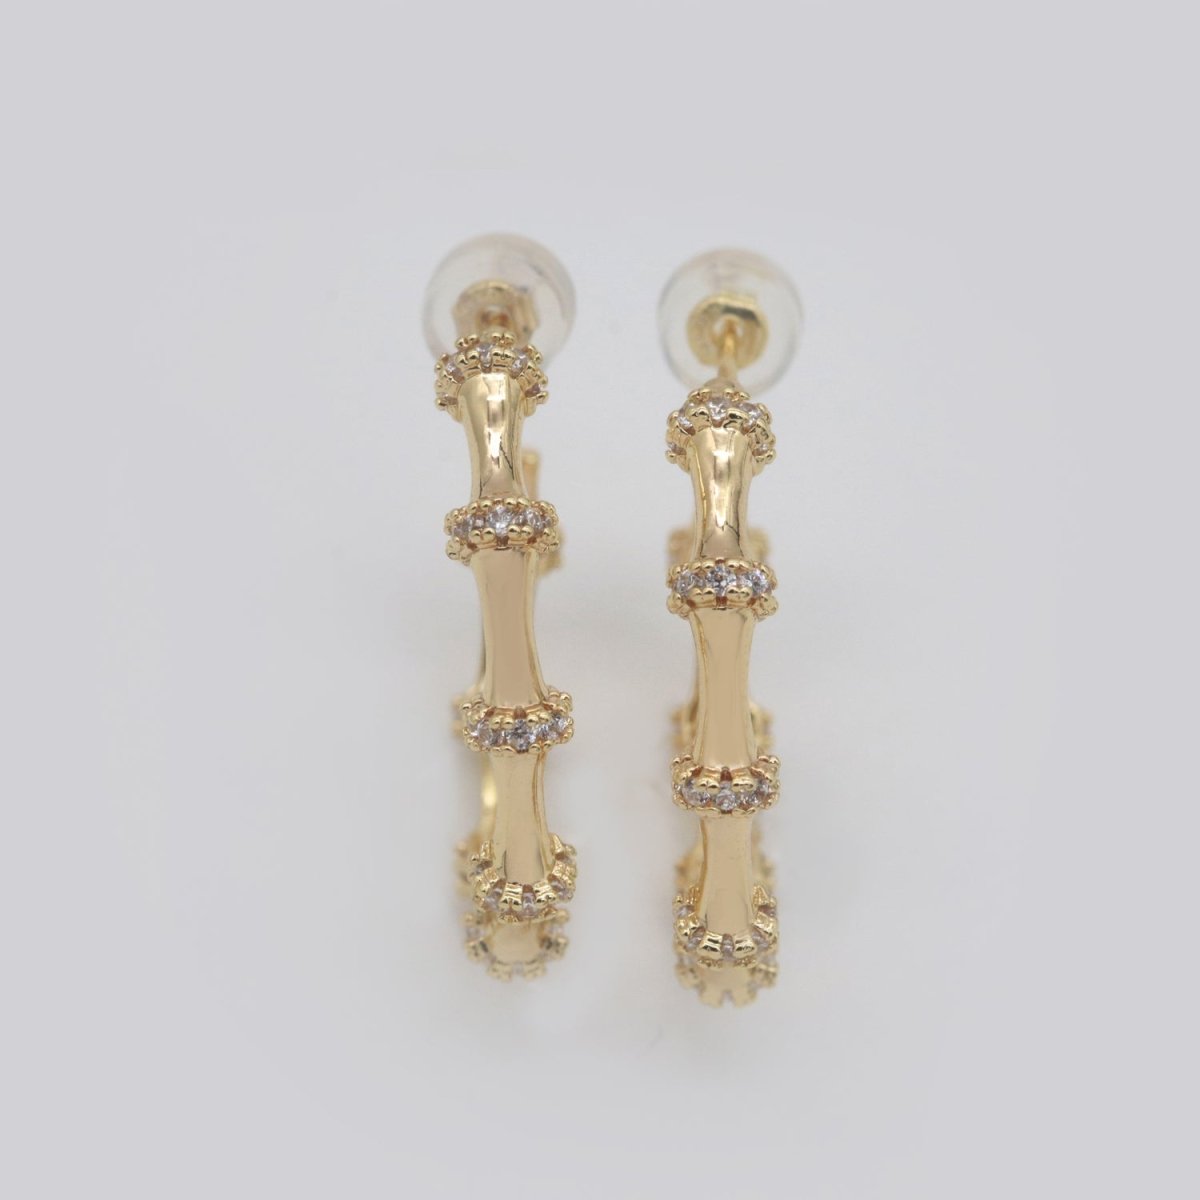 Gold Earrings, Cz Hoops Earring, Dainty Earrings, Chunky Bamboo Earrings, Everyday Wear Earrings, Statement Earring, 25mm Earring T-155 - DLUXCA